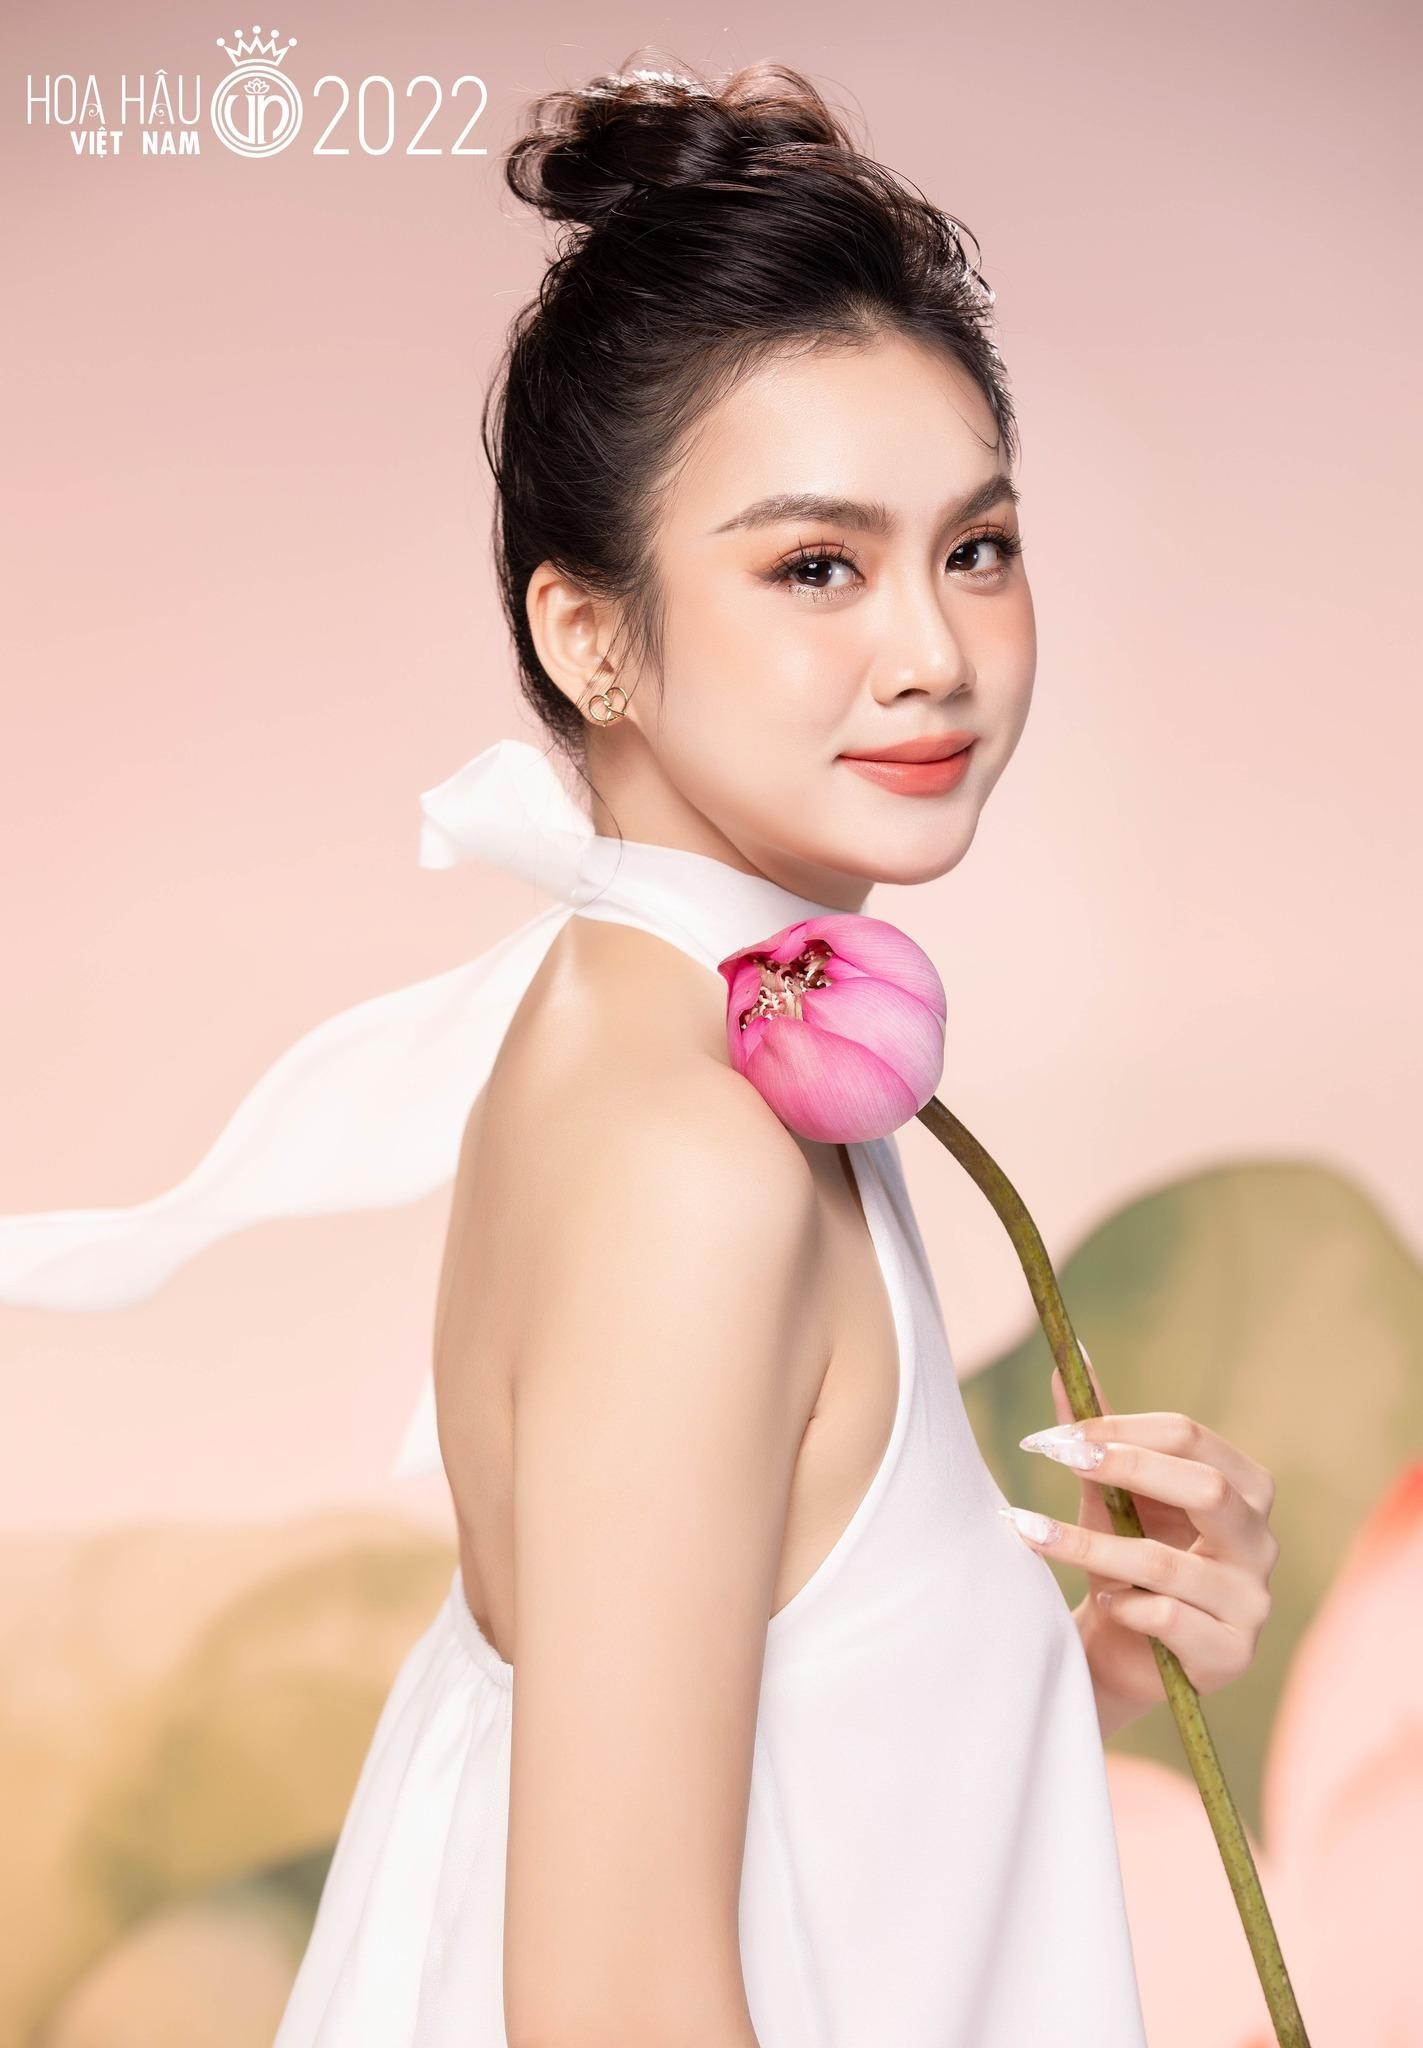 Nhan sắc cận của thí sinh Hoa hậu Việt Nam 2022 - Ảnh 21.